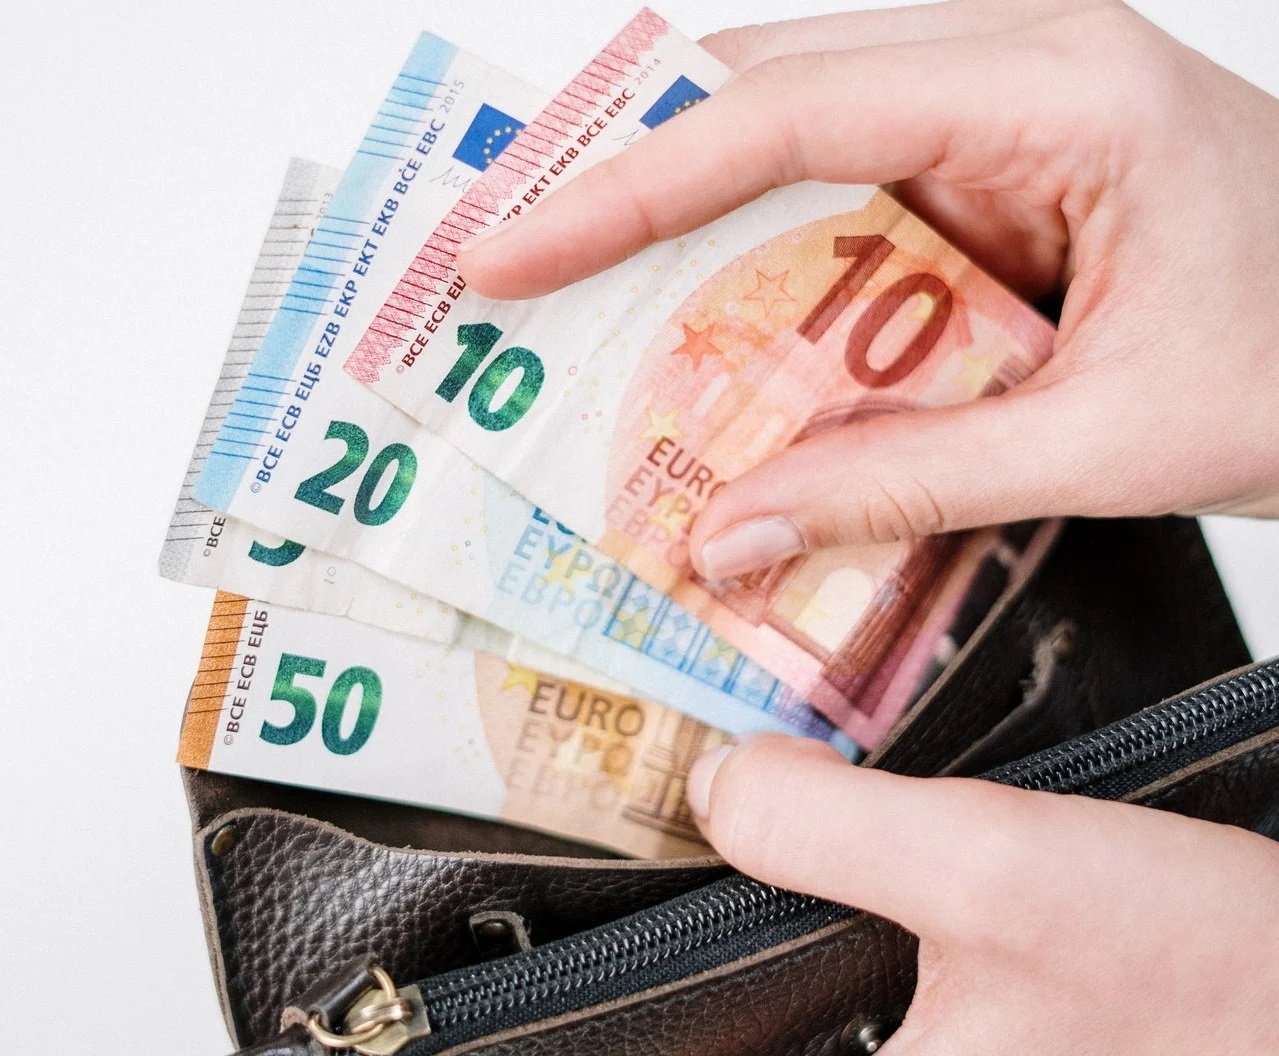  Salariul minim european, din 2024 şi în România. Câţi bani vor câştiga în plus milioane de români